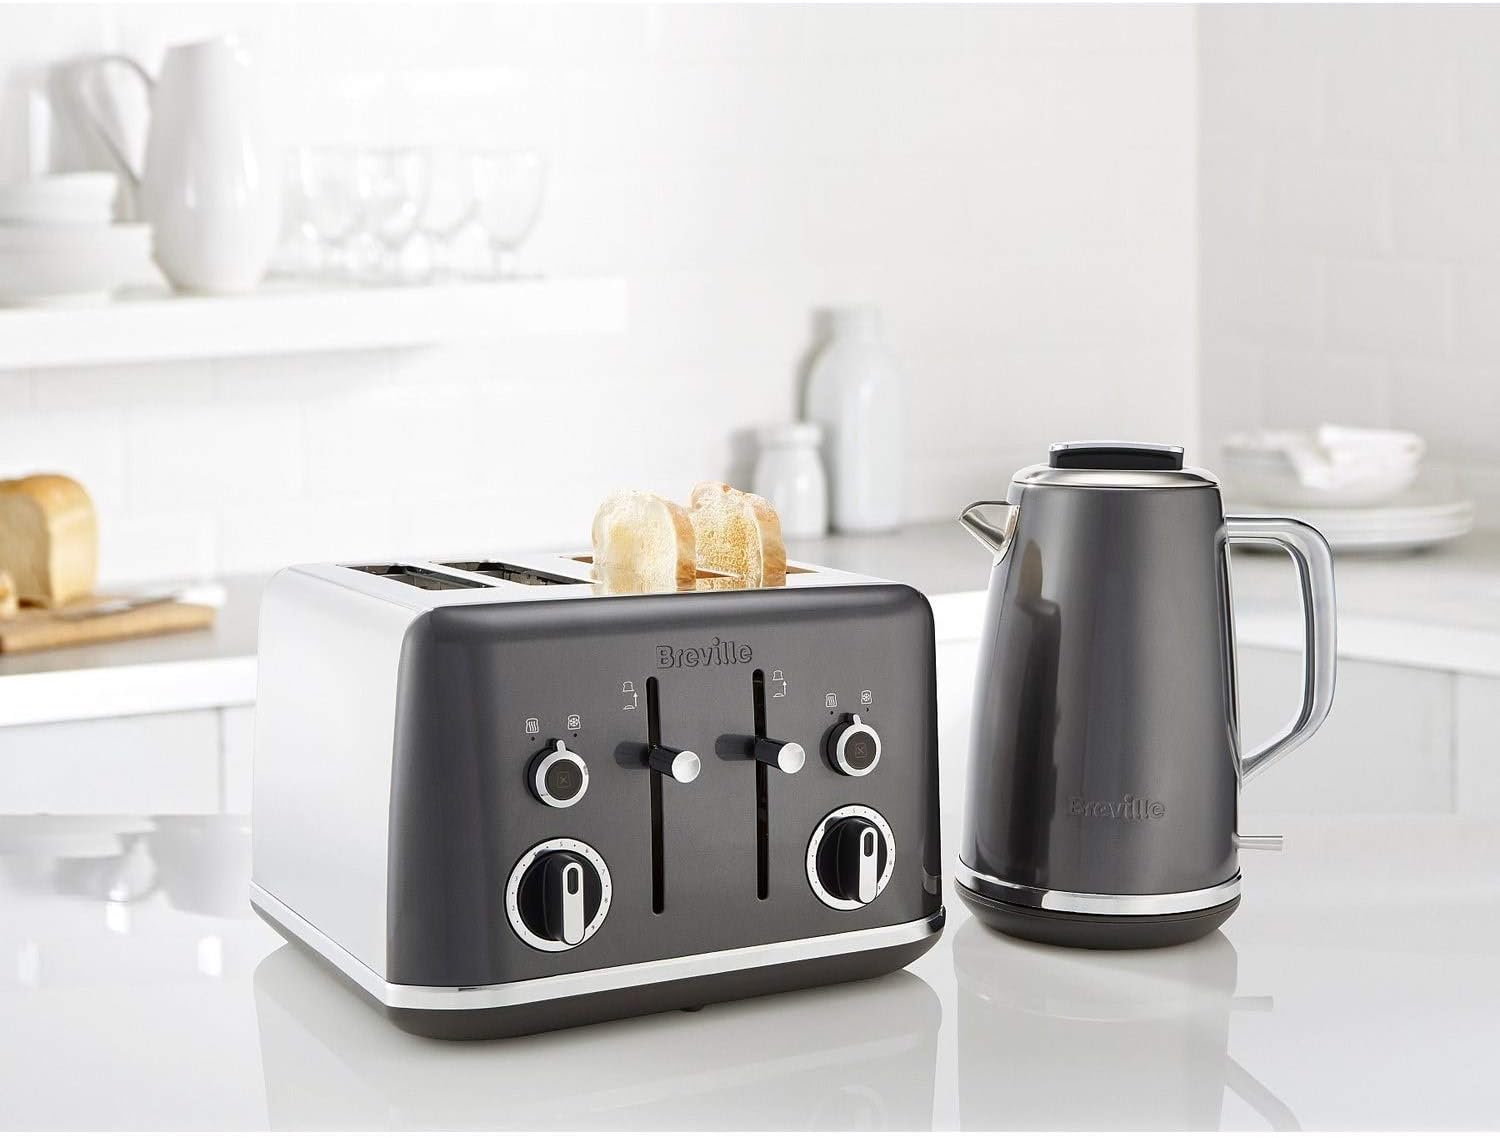 https://storables.com/wp-content/uploads/2023/08/14-superior-breville-toaster-4-slice-for-2023-1691058639.jpg